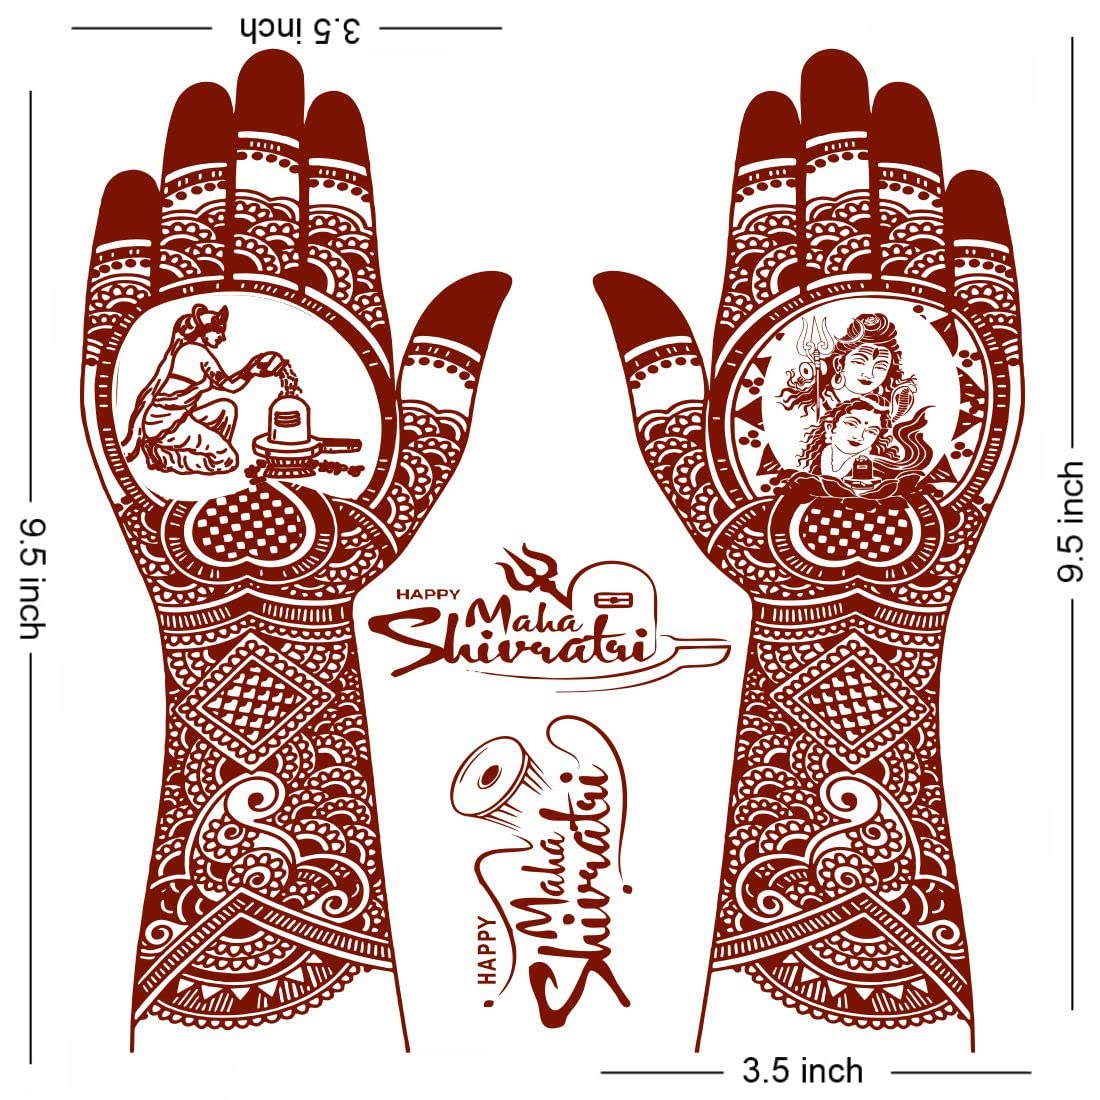 Trishul Mehndi Designs For Mahashivratri : हाथों पर मेहंदी से बनाएं शिव जी  के प्रिय त्रिशूल की ये डिजाइंस | see pics of trishul mehndi designs for  mahashivratri | HerZindagi